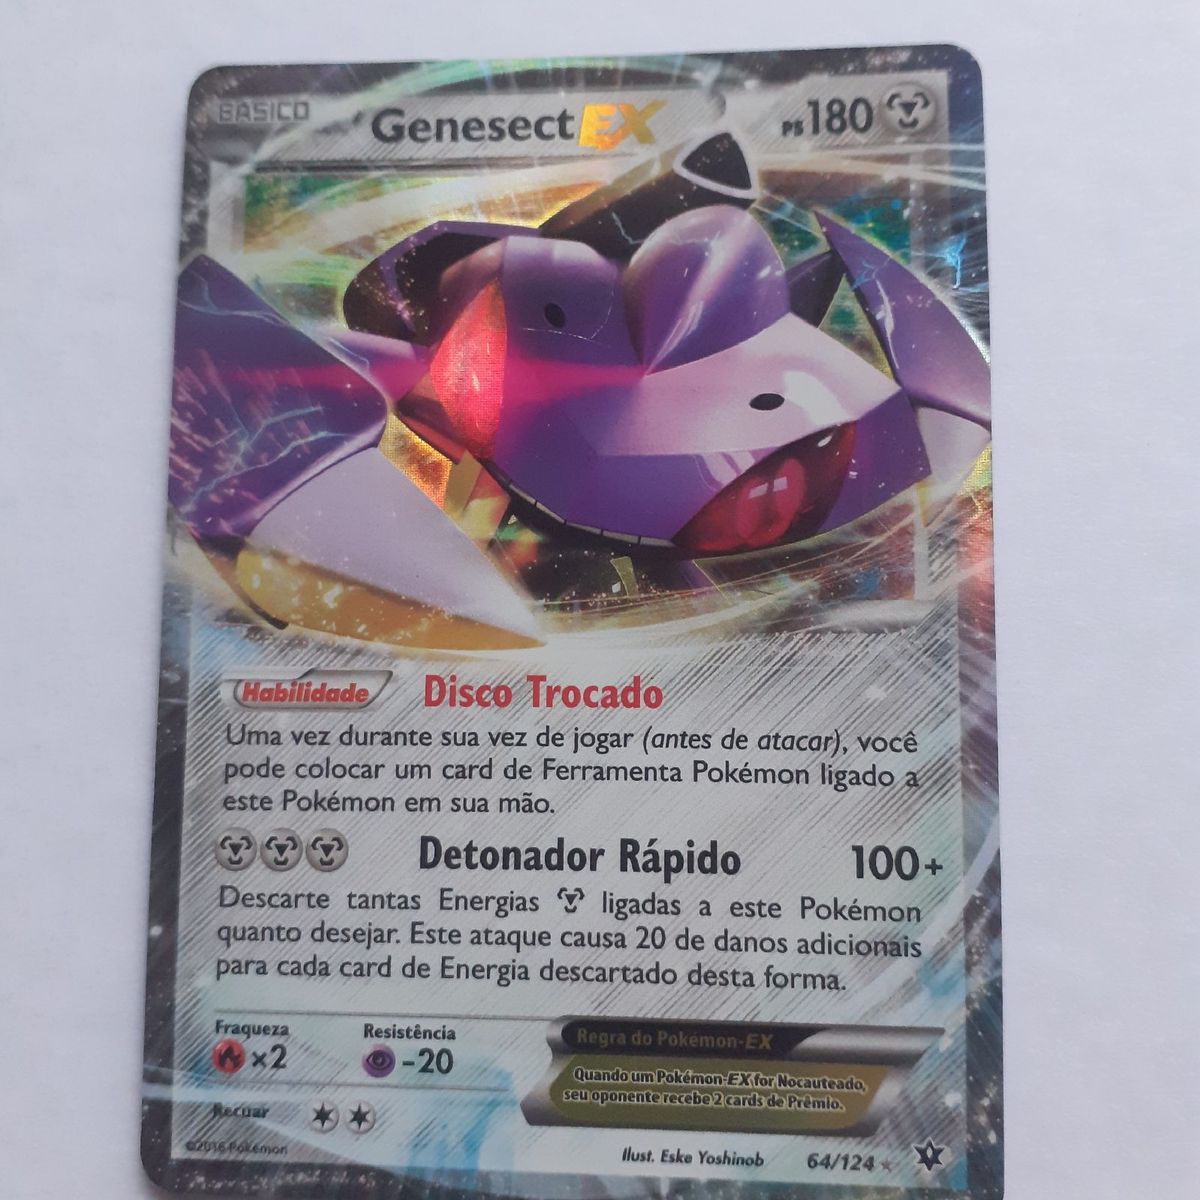 Genesect-EX, Pokémon